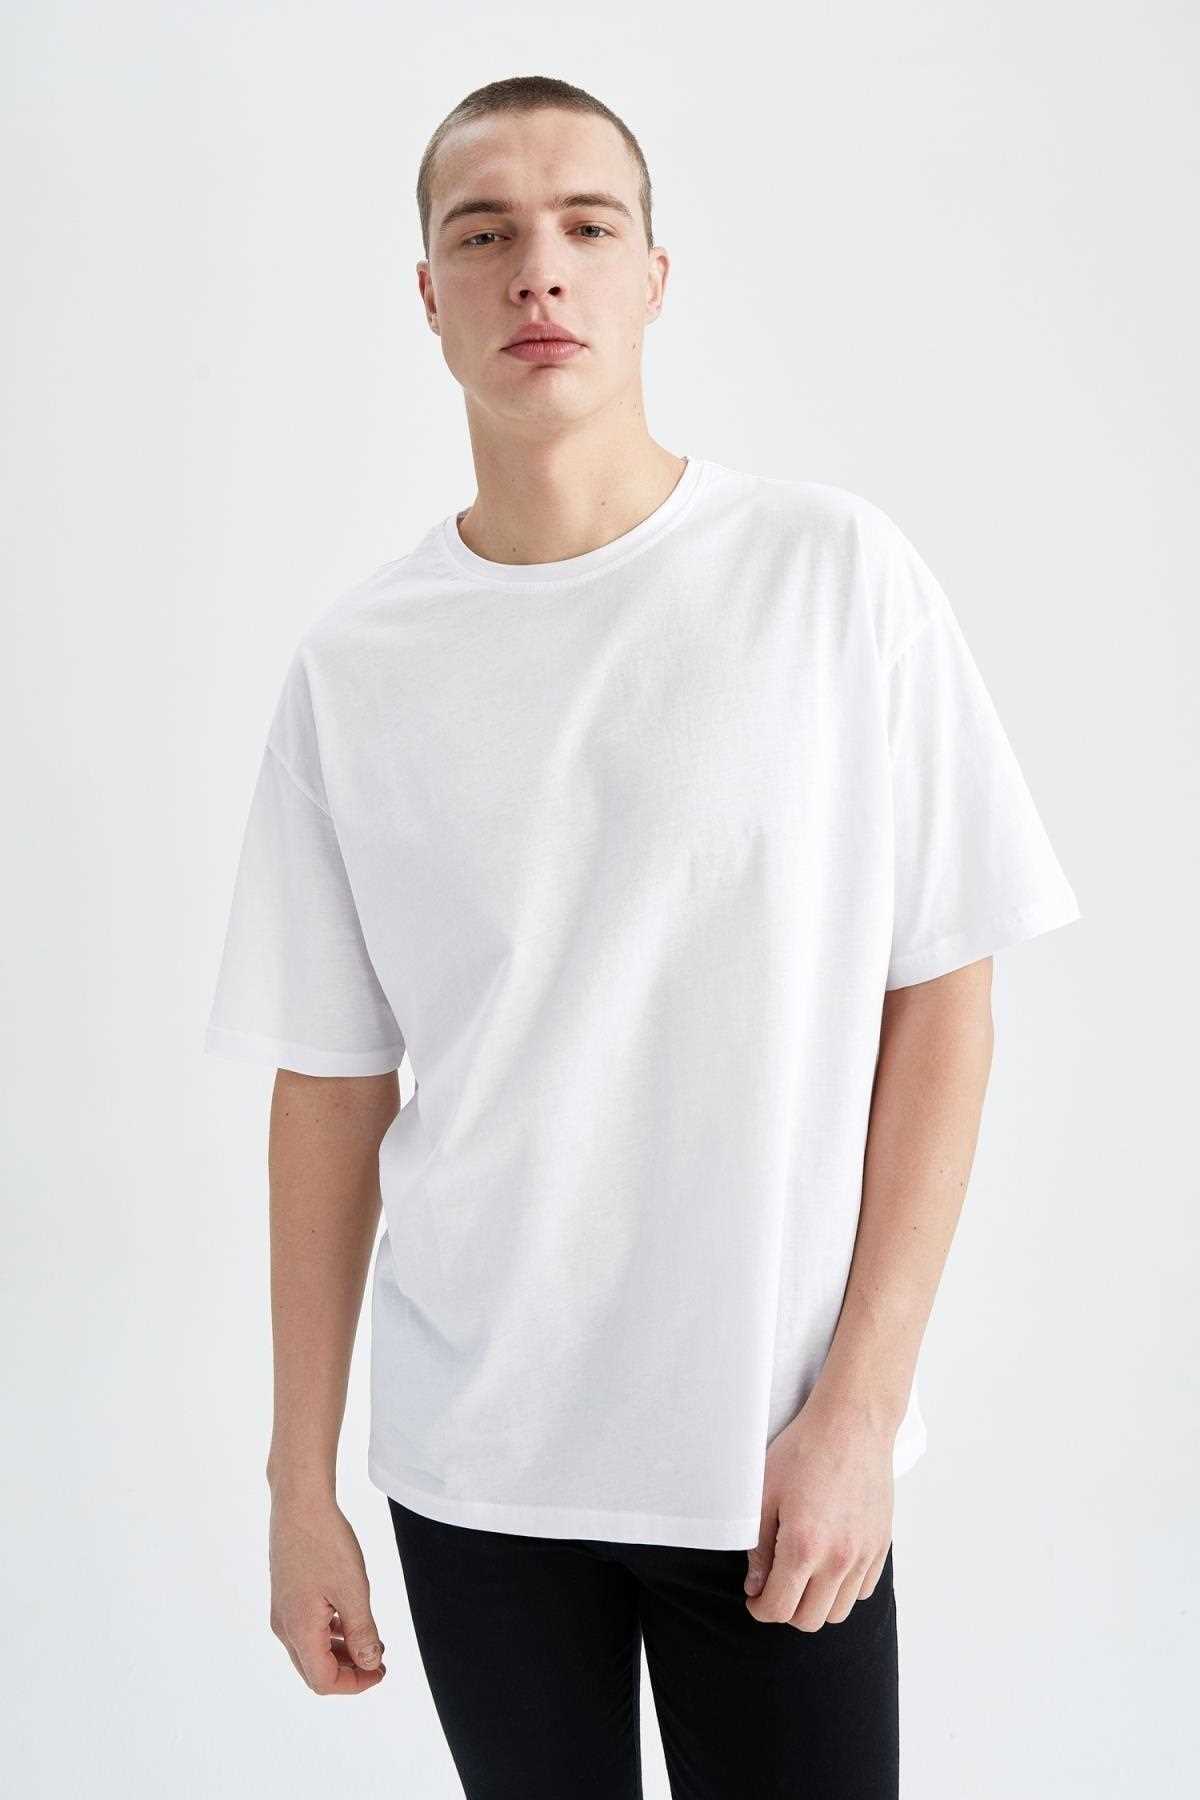 خرید تیشرت مردانه اصل برند دفاکتو ترک رنگ سفید ty266000708